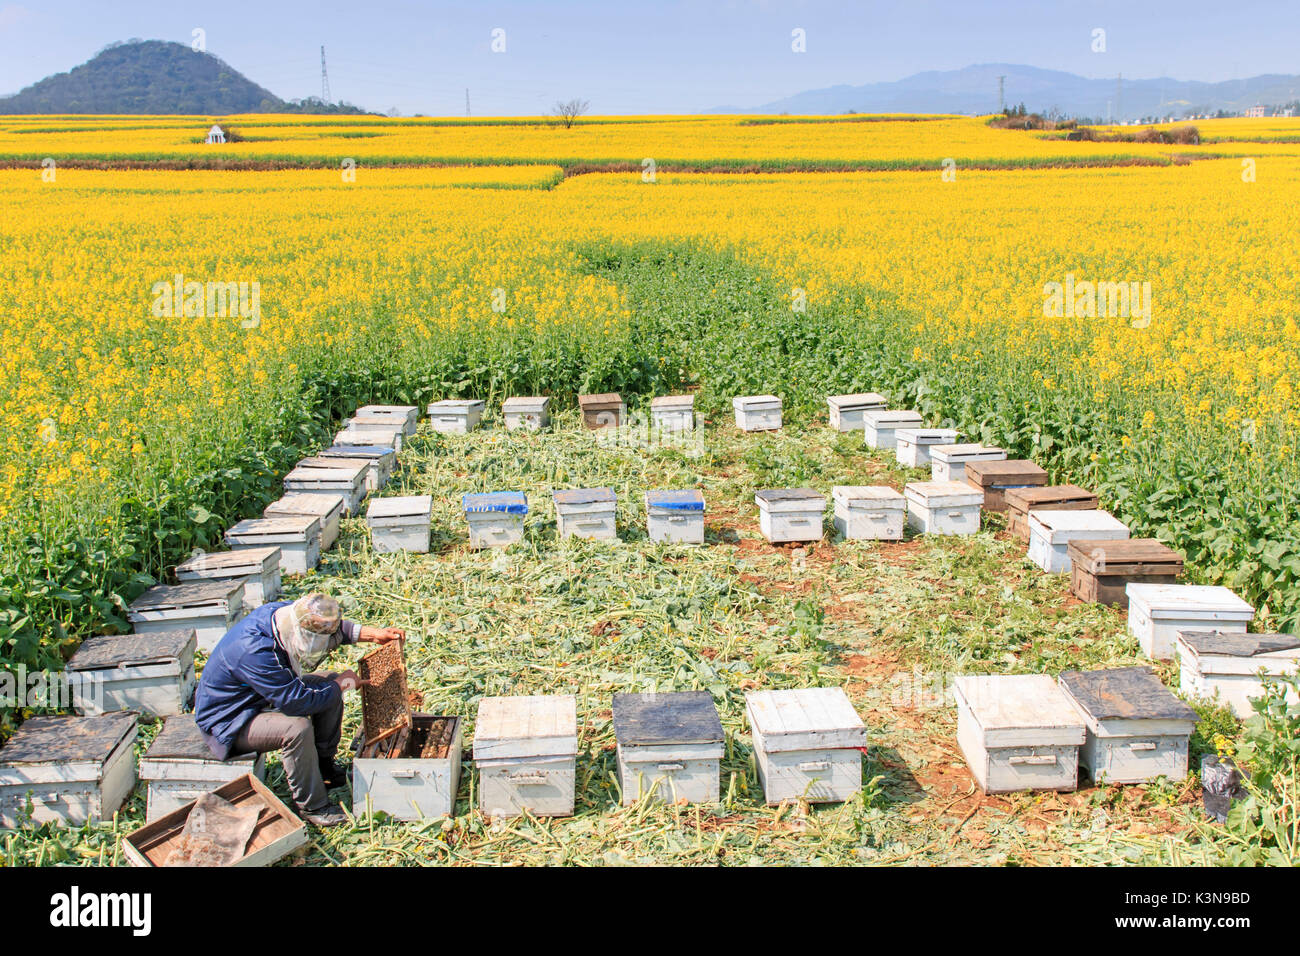 L'apiculteur travaillant parmi les champs de fleurs de colza de Luoping dans le Yunnan en Chine. Luoping est célèbre pour les fleurs de colza que fleur le début du printemps Banque D'Images